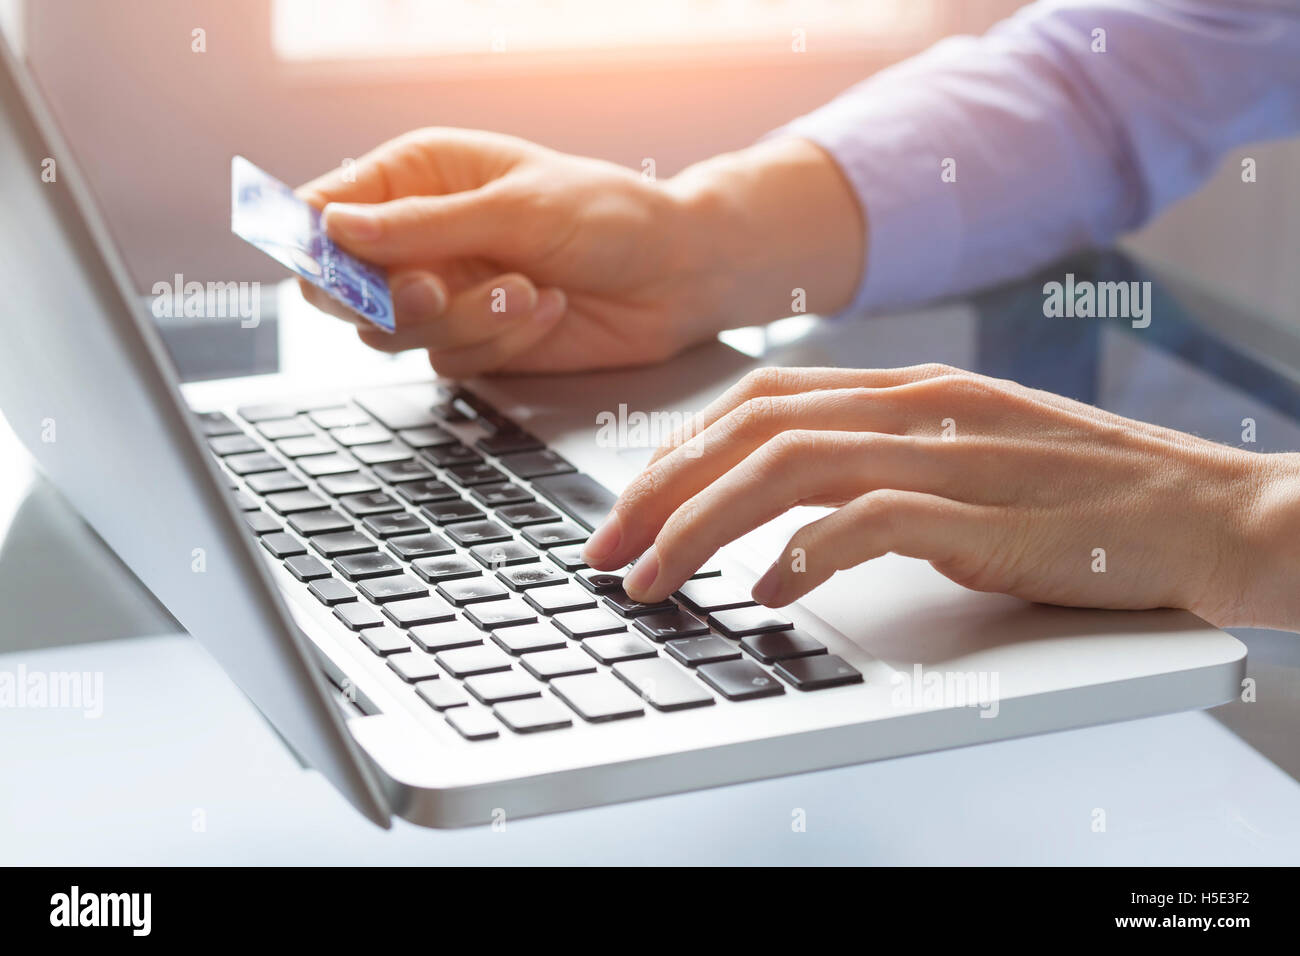 Concept à propos du paiement en ligne sur internet et e-commerce, femme au foyer à taper le numéro de carte de crédit sur l'ordinateur Banque D'Images